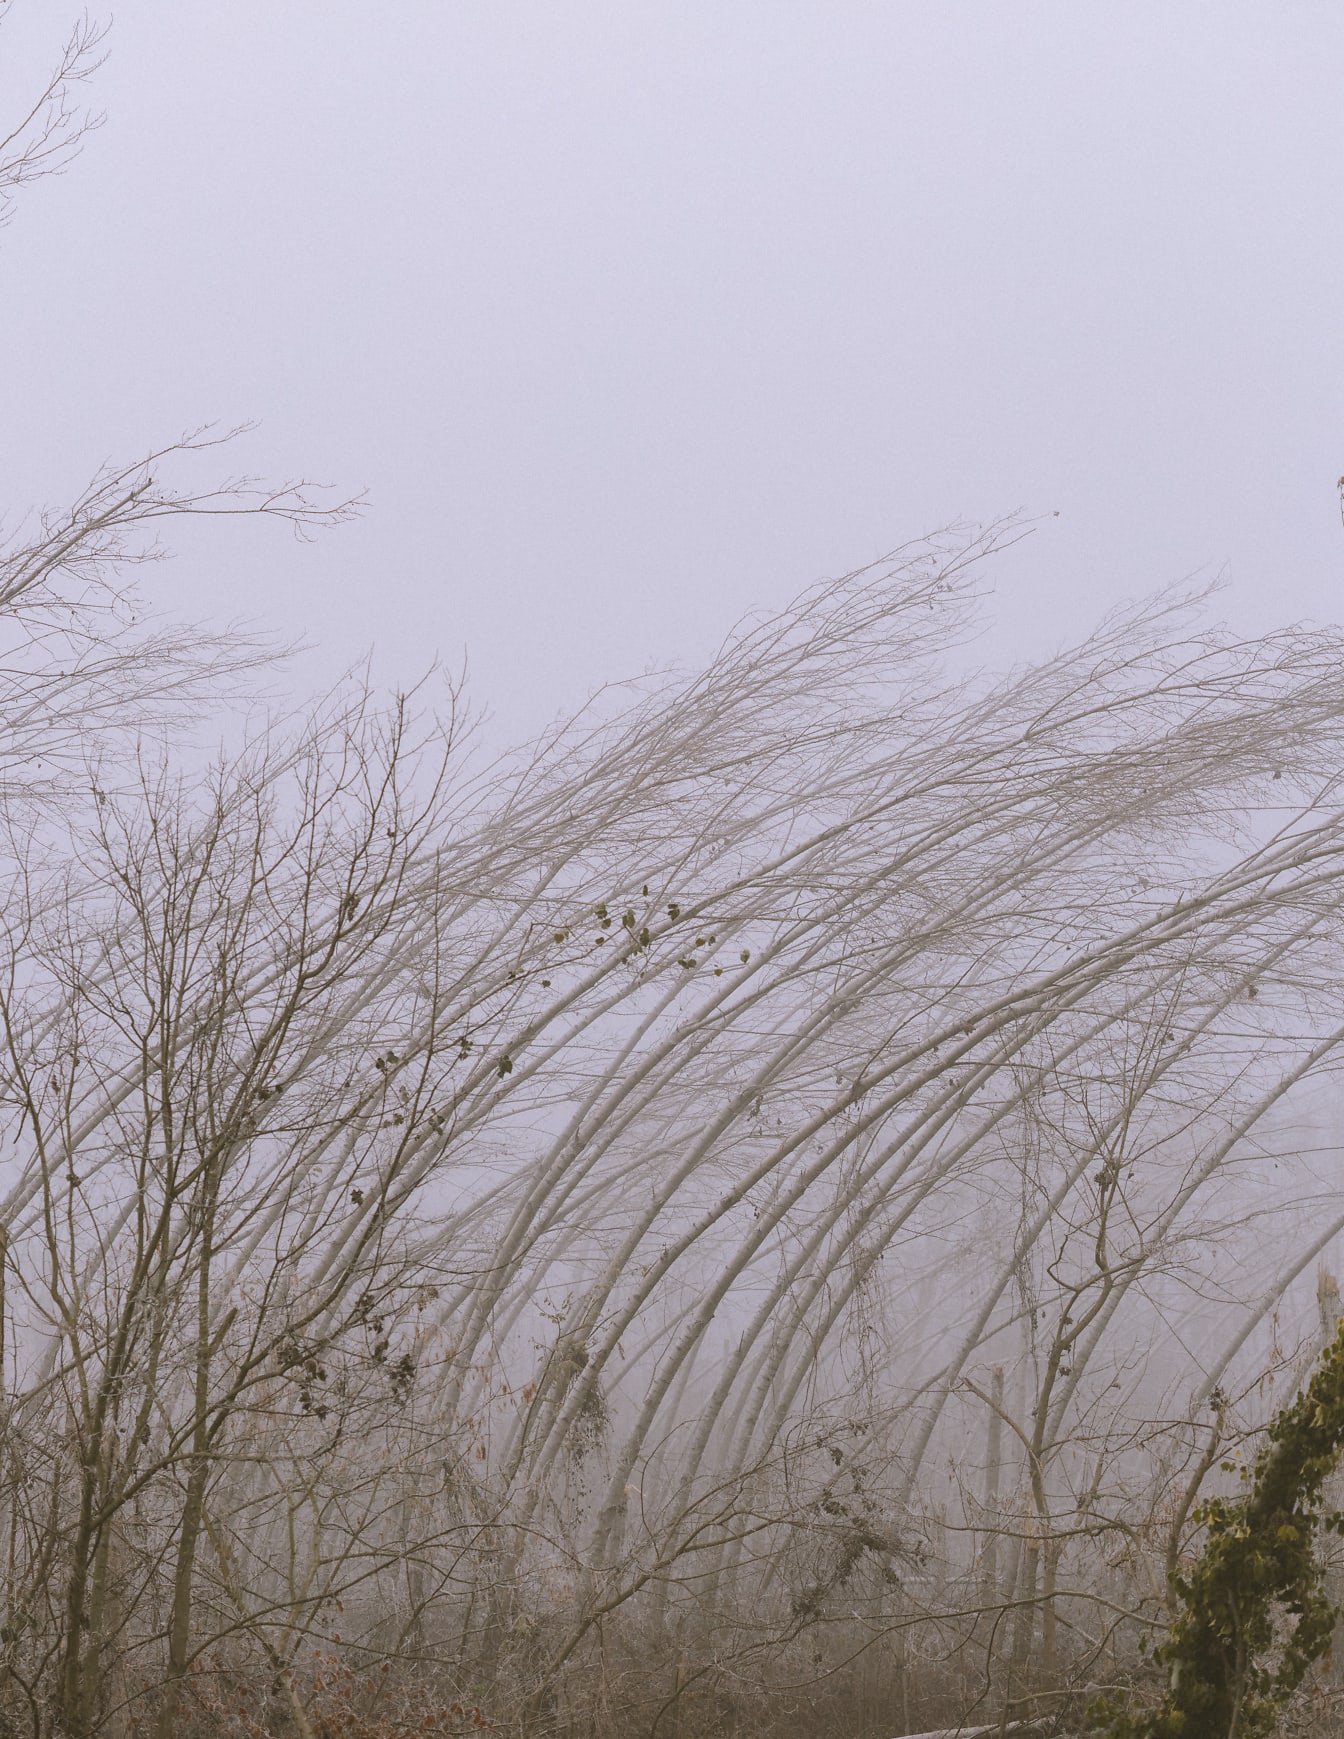 Gruppe af træer med frostige grene uden blade i tåget poppelskov